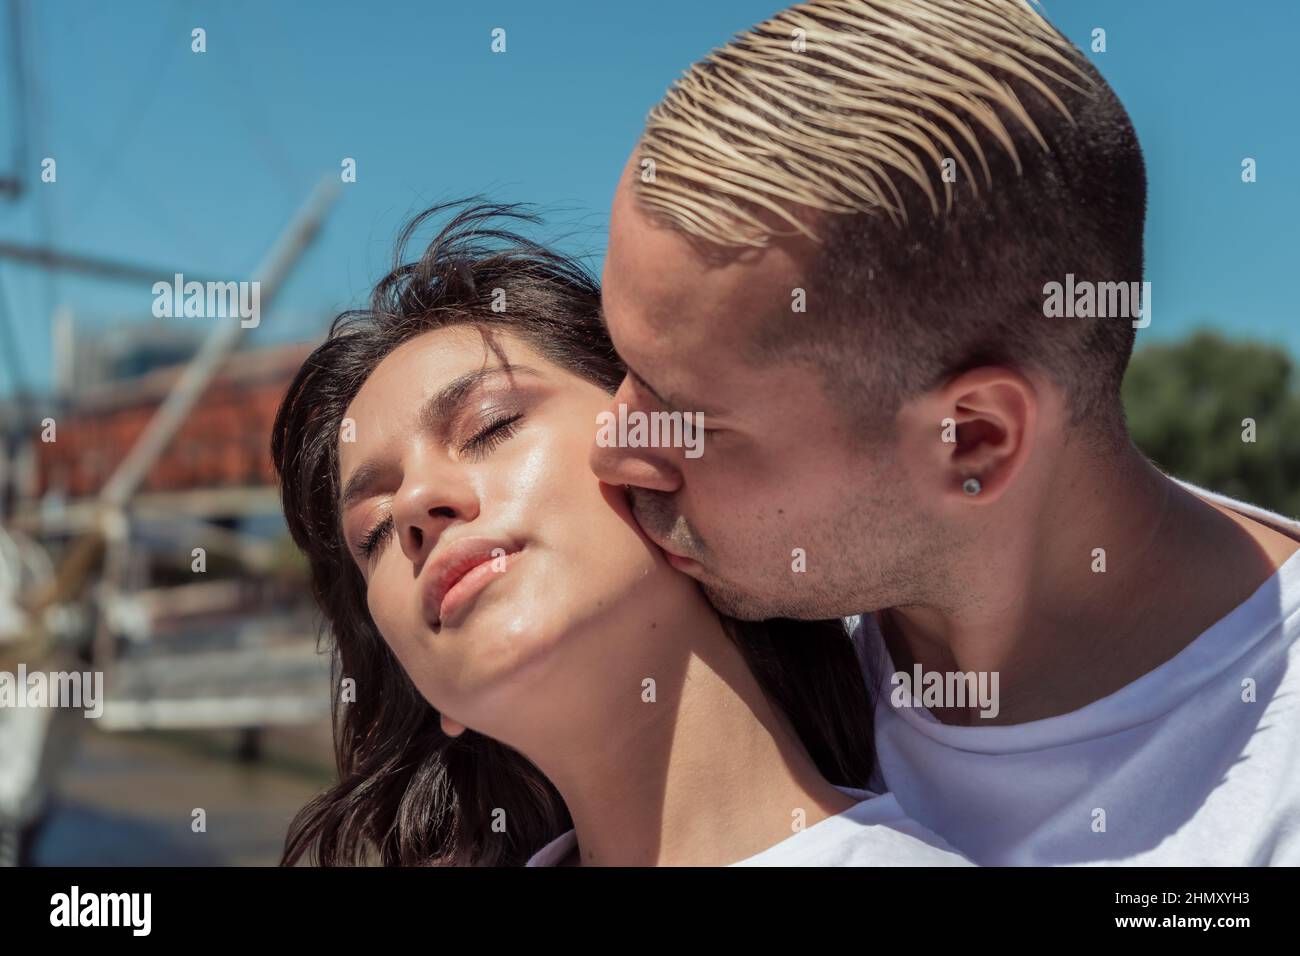 Ritratto di una giovane donna latina innamorata baciata dal ragazzo. Concetto di amore, coppia, felicità, relax. Foto Stock